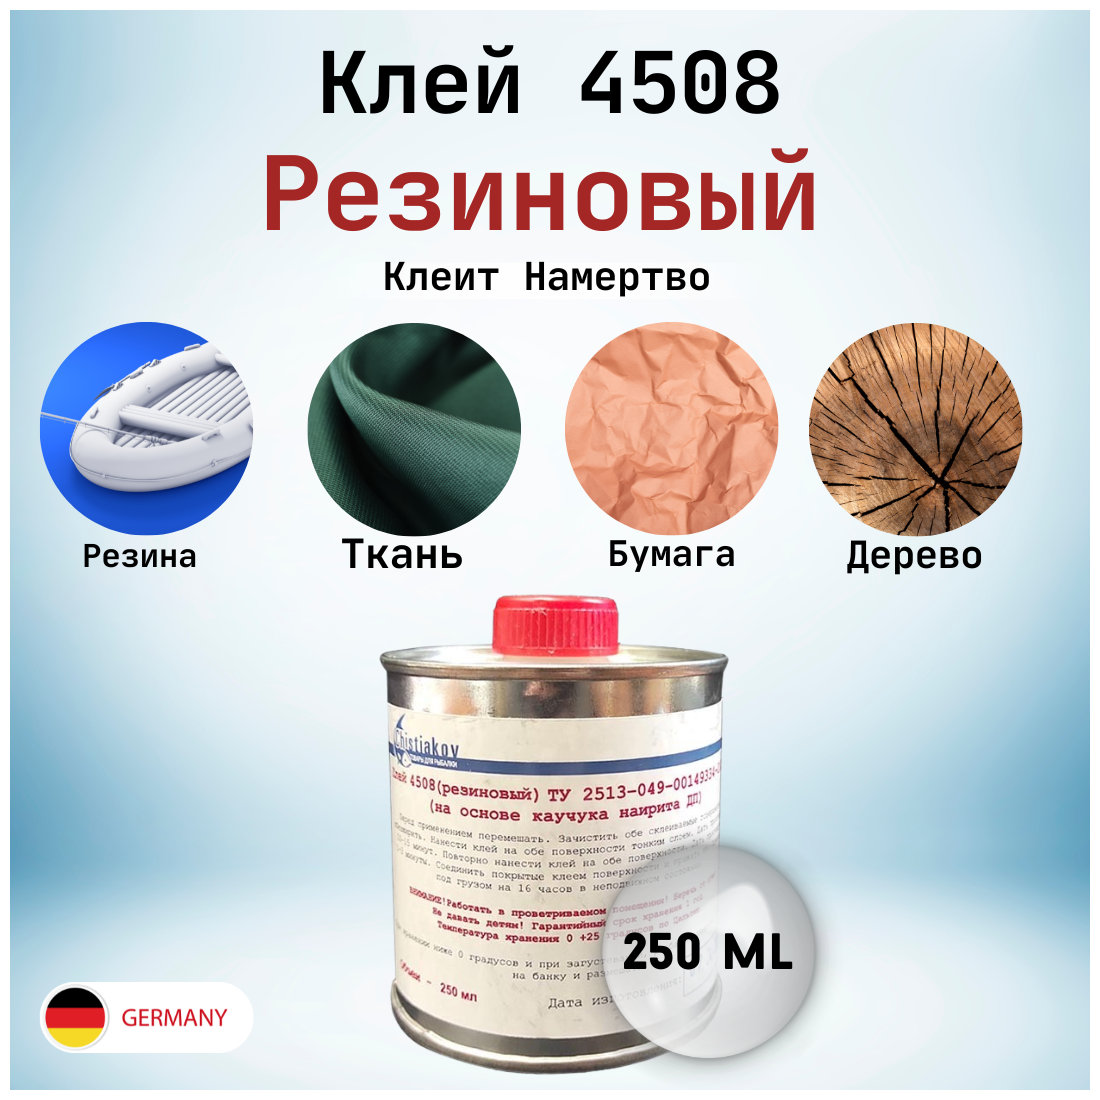 Клей 4508 резиновый (на основе каучука нитрита) 250 мл.